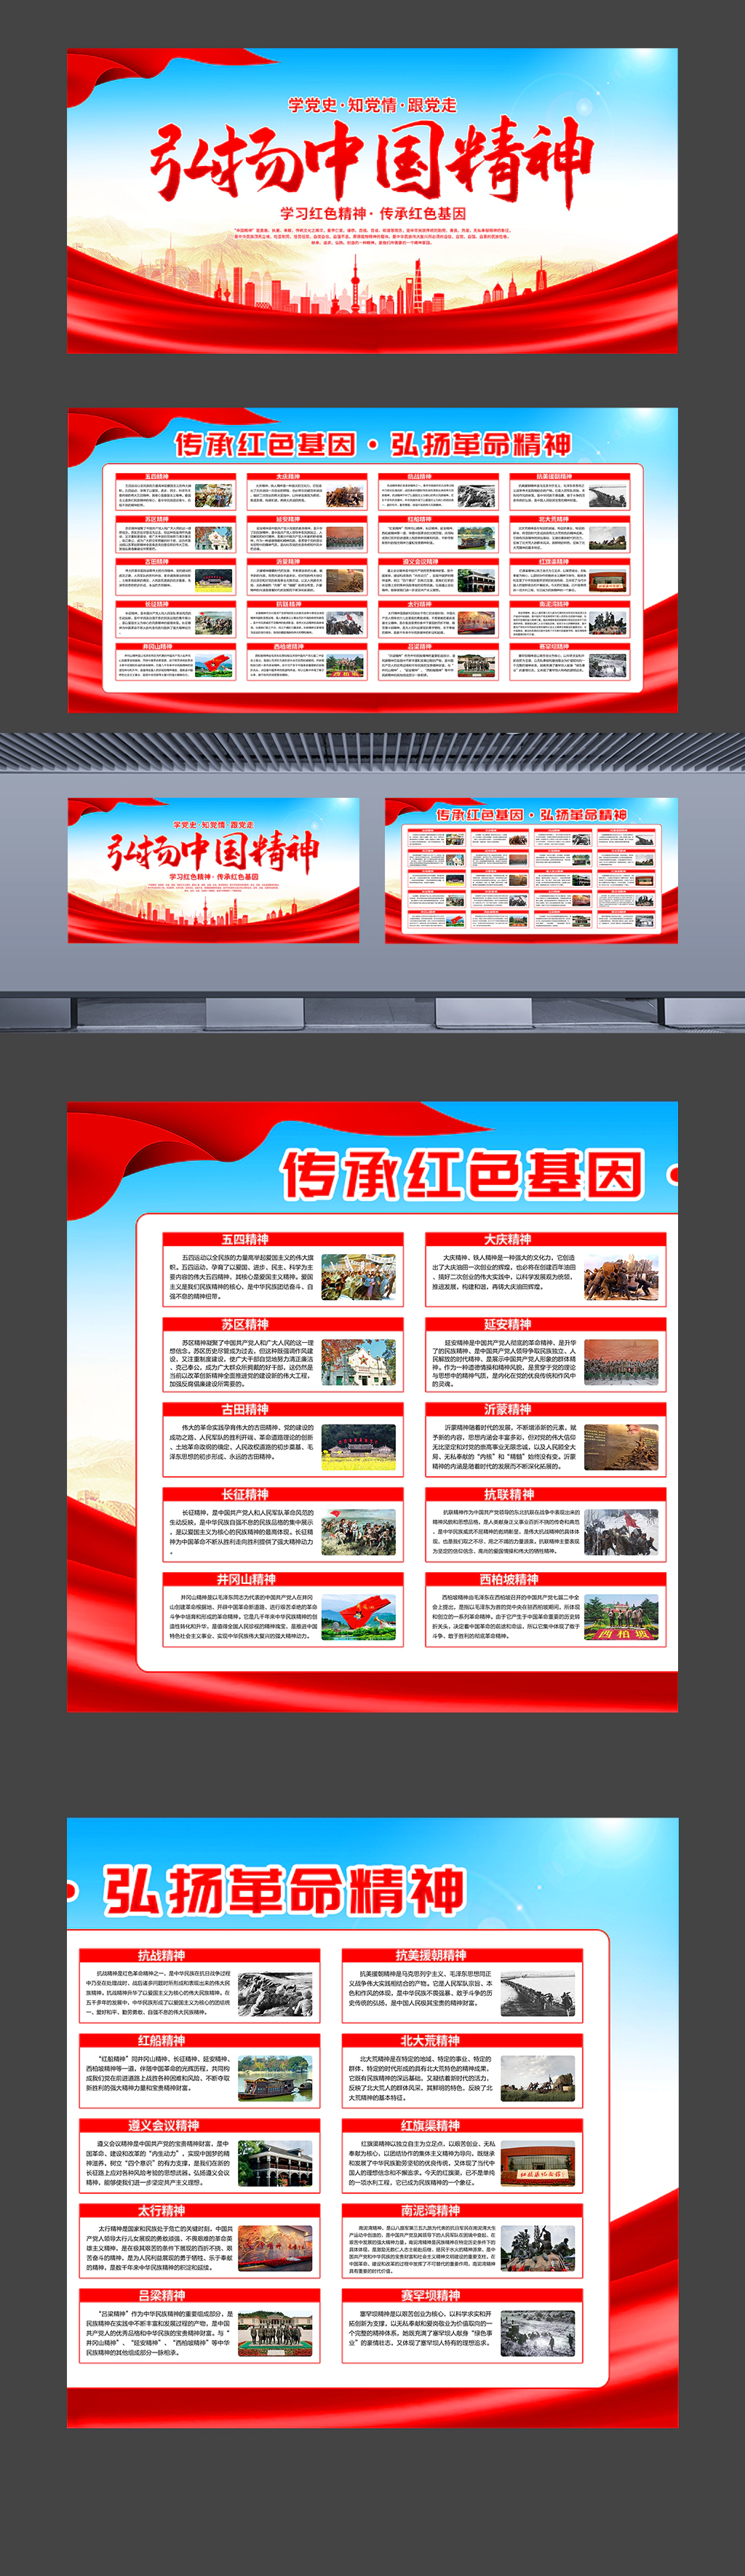 弘扬中国精神传承红色基因党建海报展板